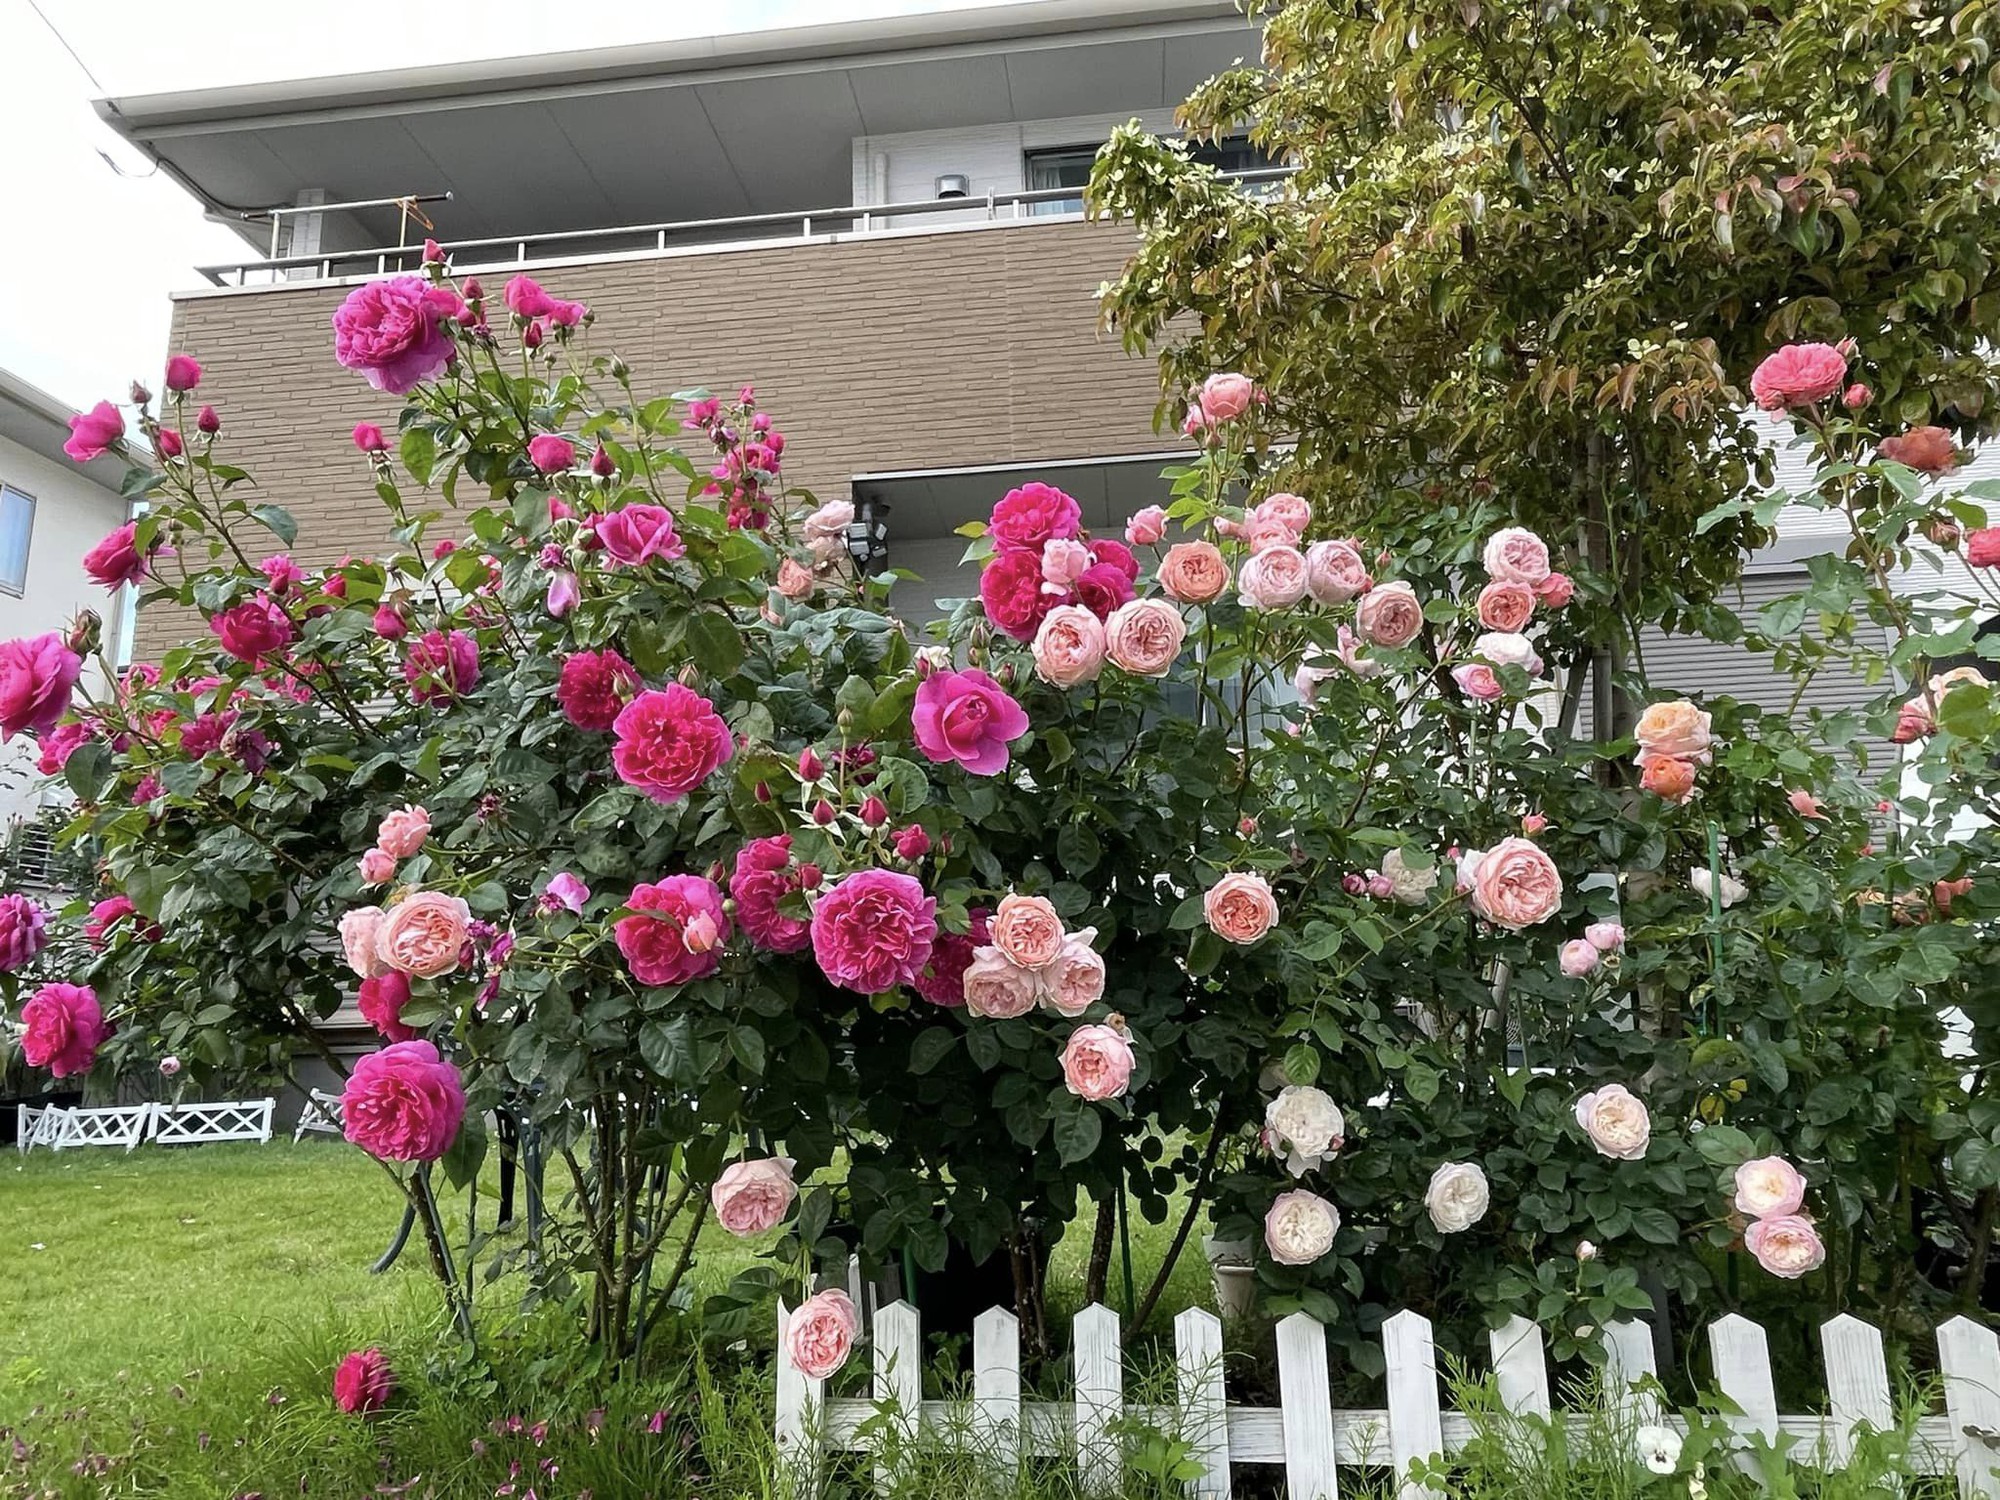 Ngôi nhà lúc nào cũng thơm nức mùi hoa vì có vườn hồng hơn 80 loại của mẹ Việt ở Nhật- Ảnh 4.